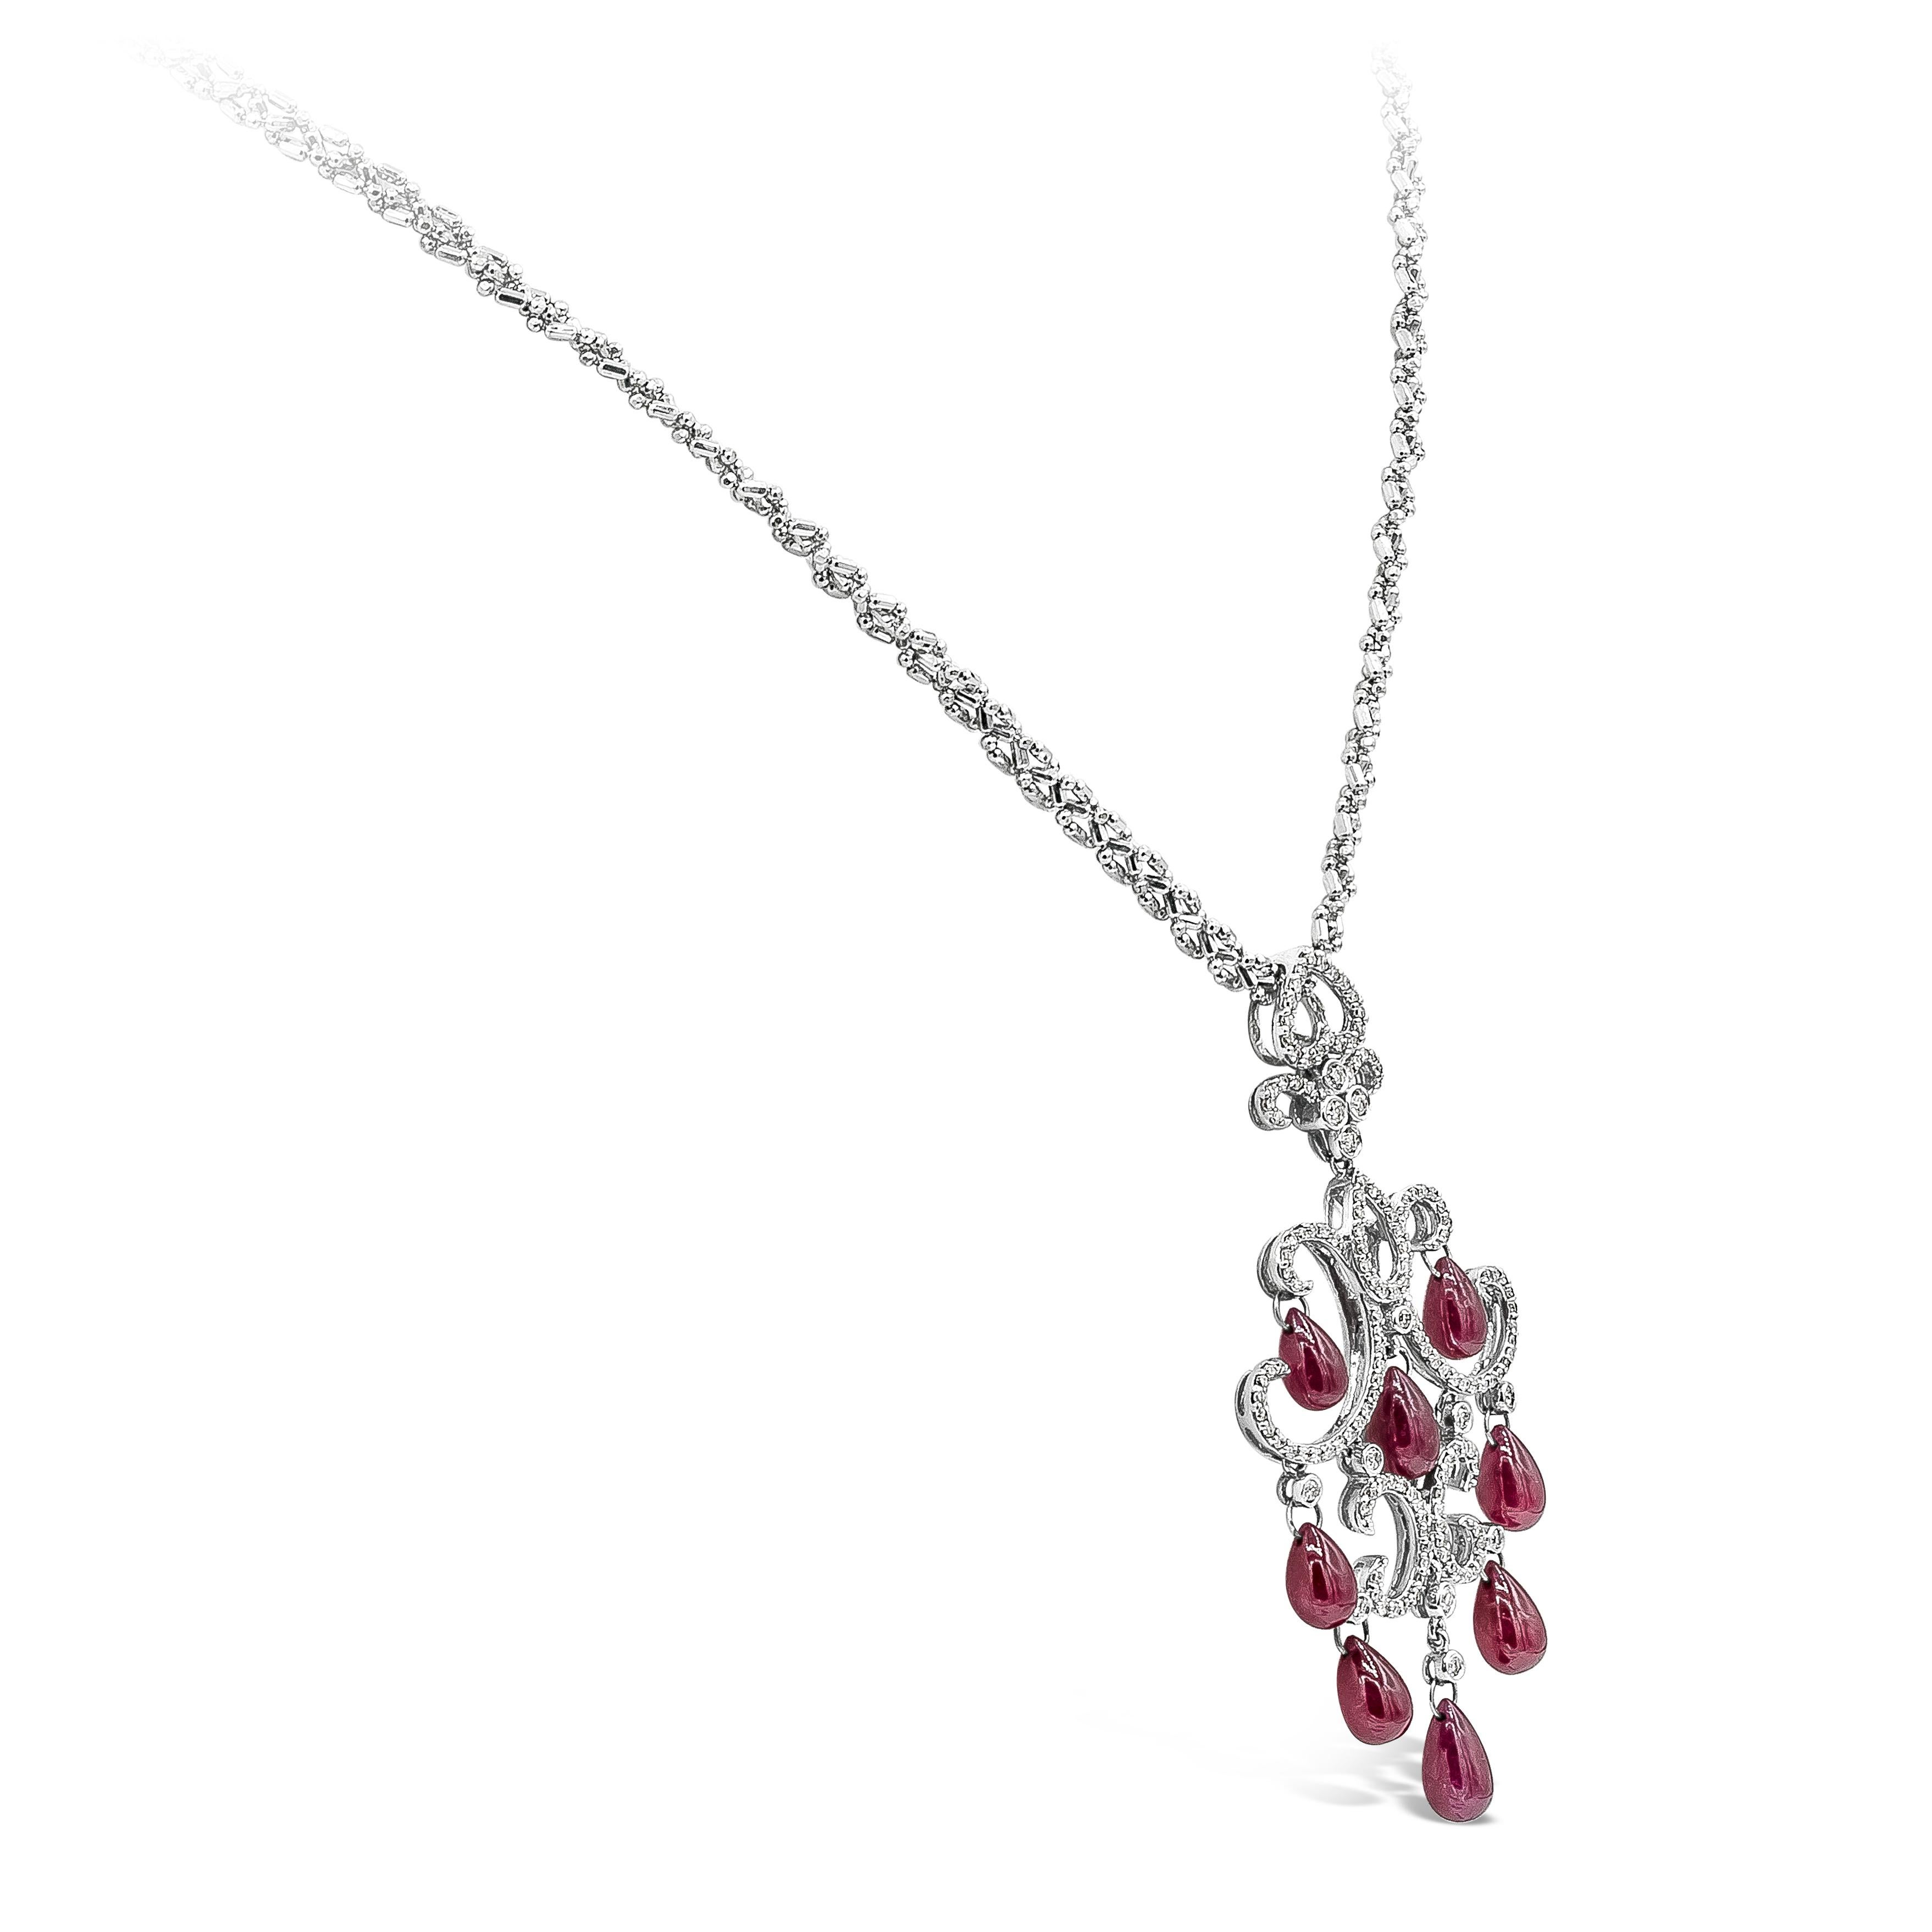 Un collier chandelier au design complexe, avec des briolettes de rubis riches en couleurs pesant 16,25 carats au total. Accentué par des diamants ronds de taille brillante pesant 0,80 carats au total. Le pendentif mesure 2,5 pouces et la chaîne est